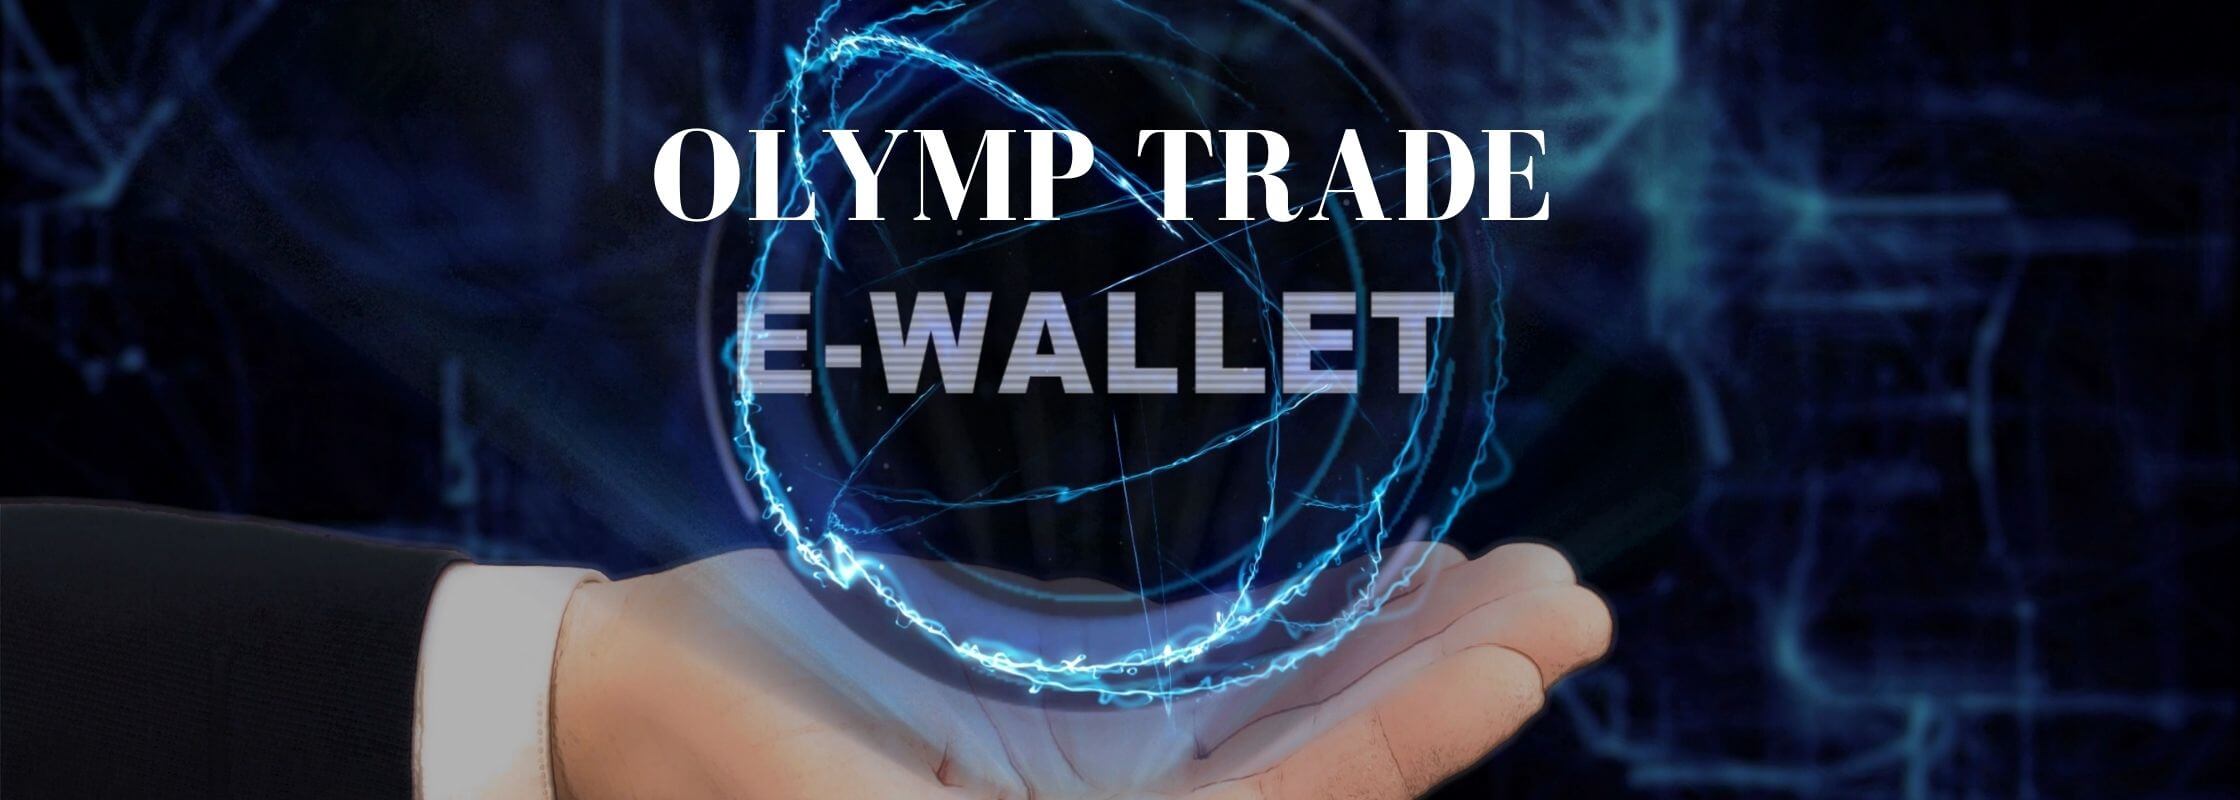 Kaedah Deposit di Olymp Trade E-wallet Skrill